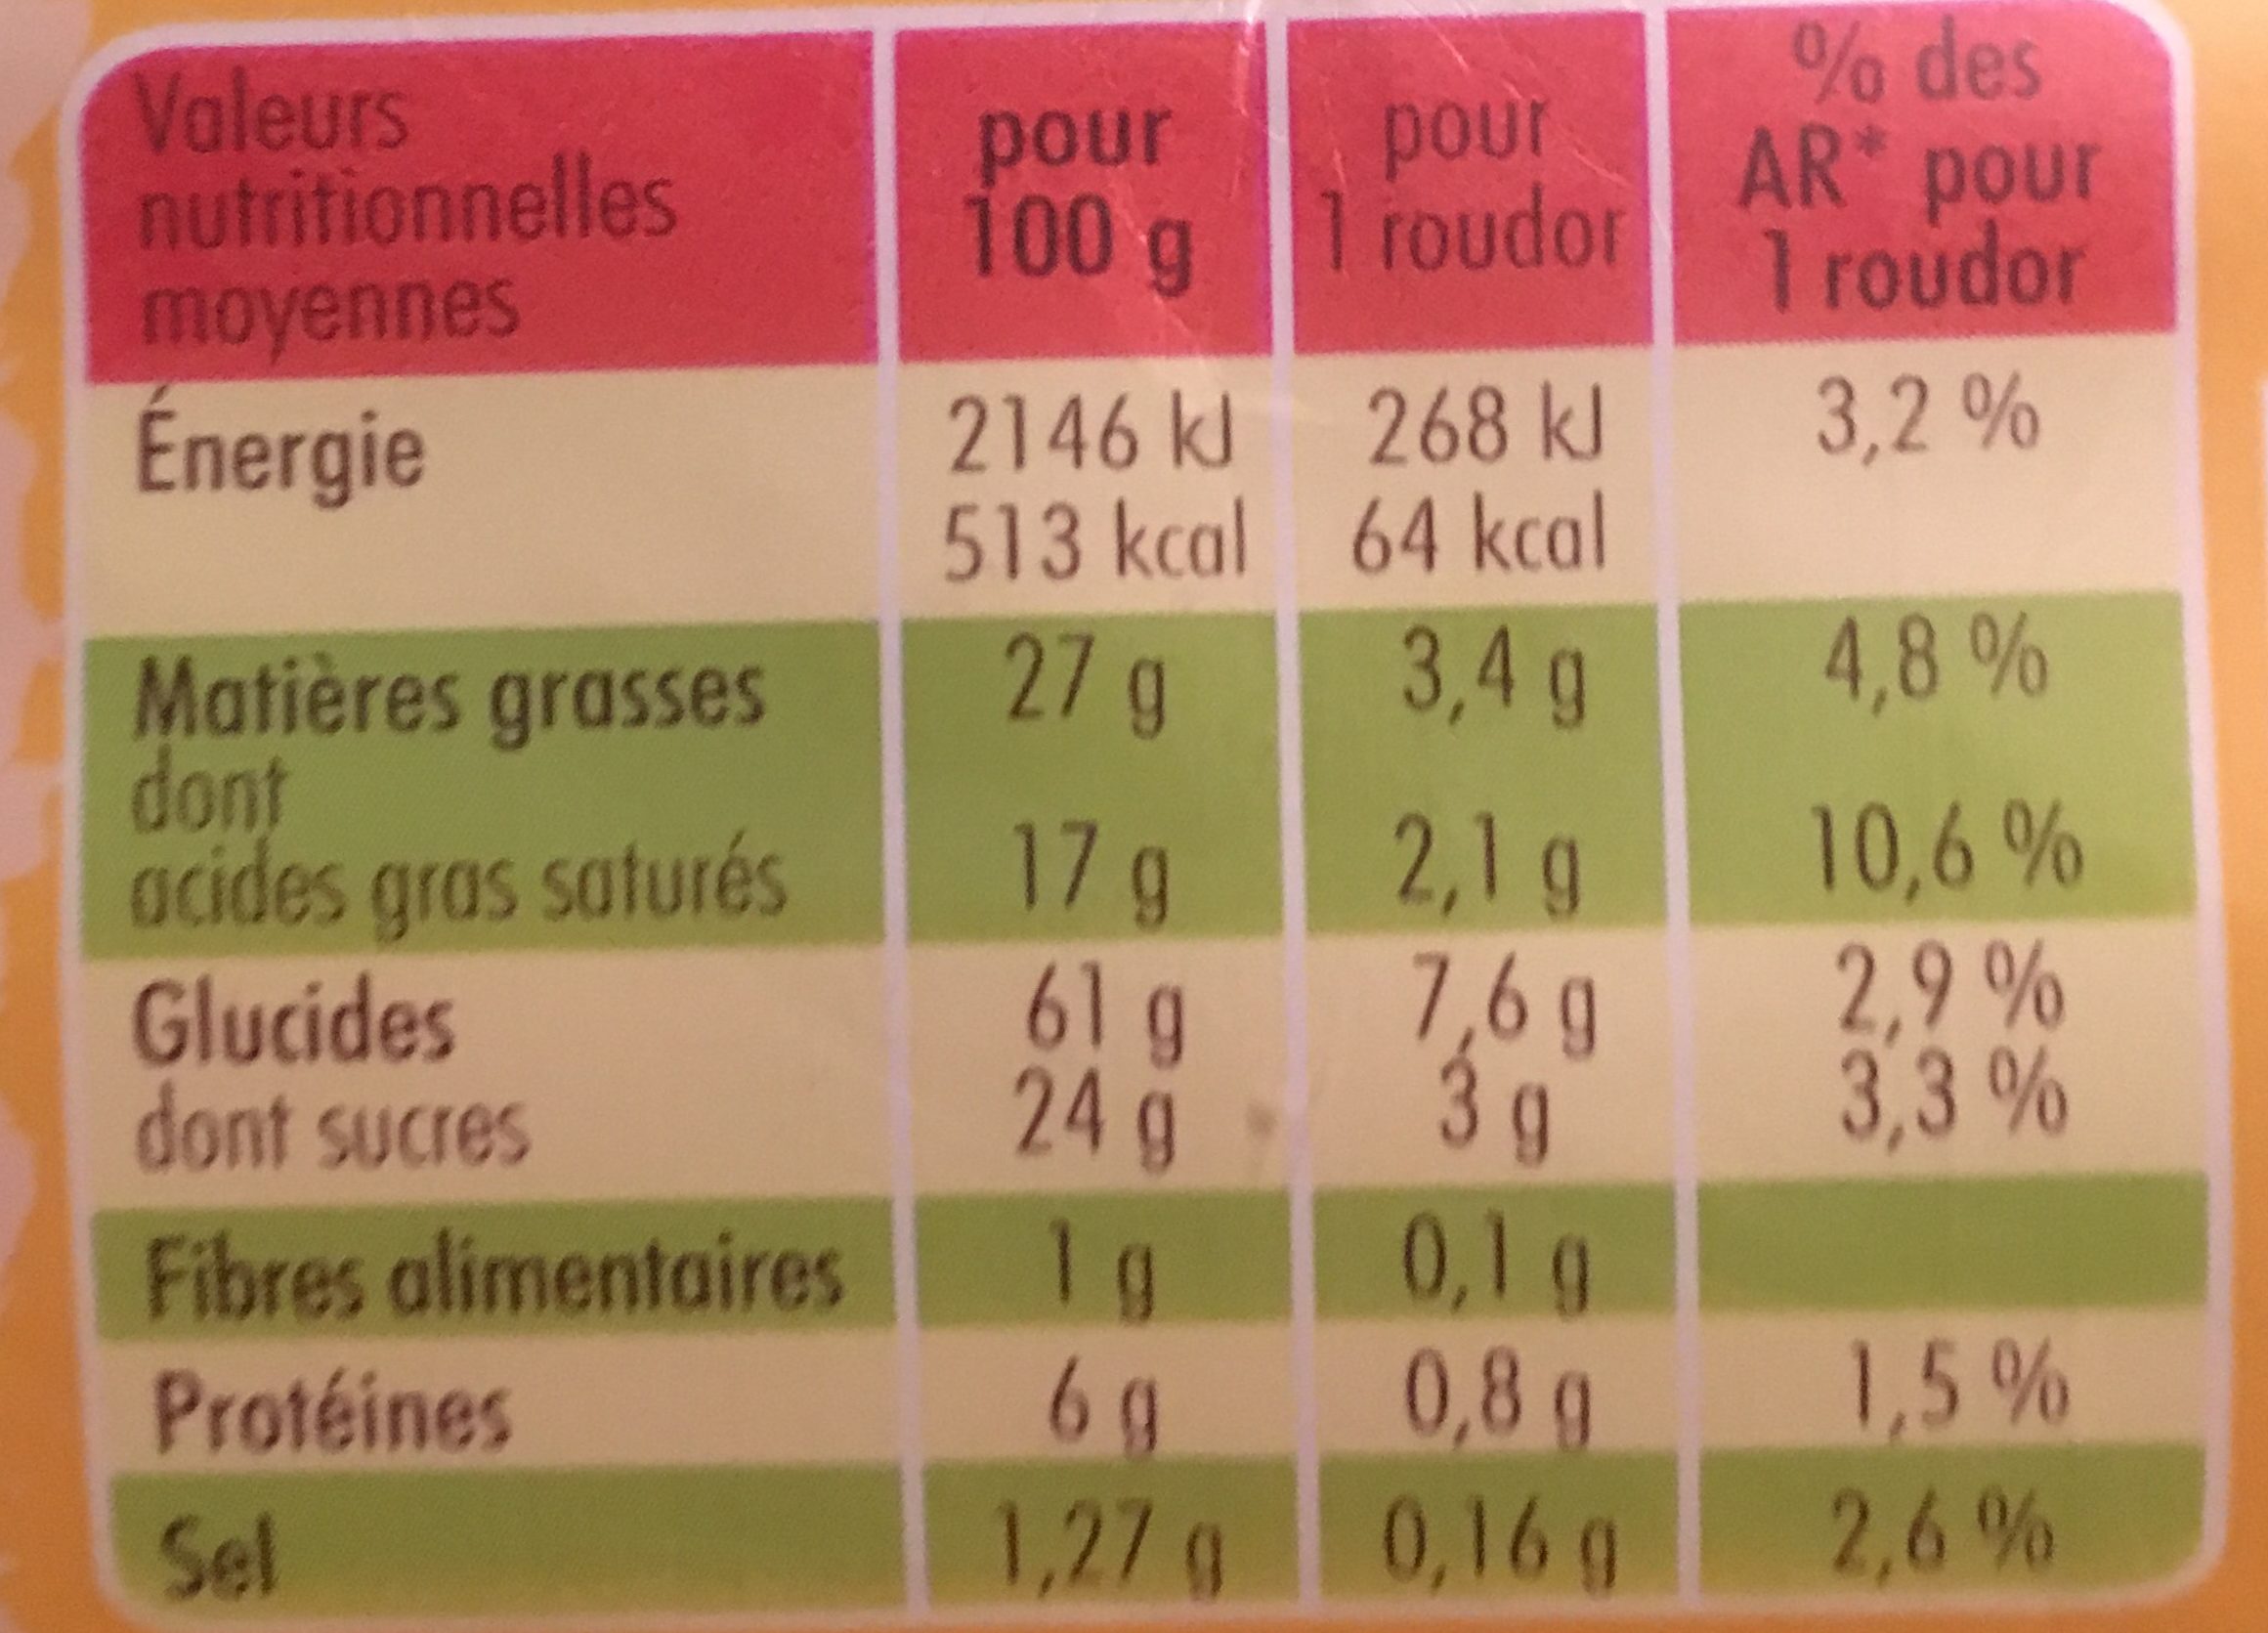 Saint Michel roudor - Tableau nutritionnel